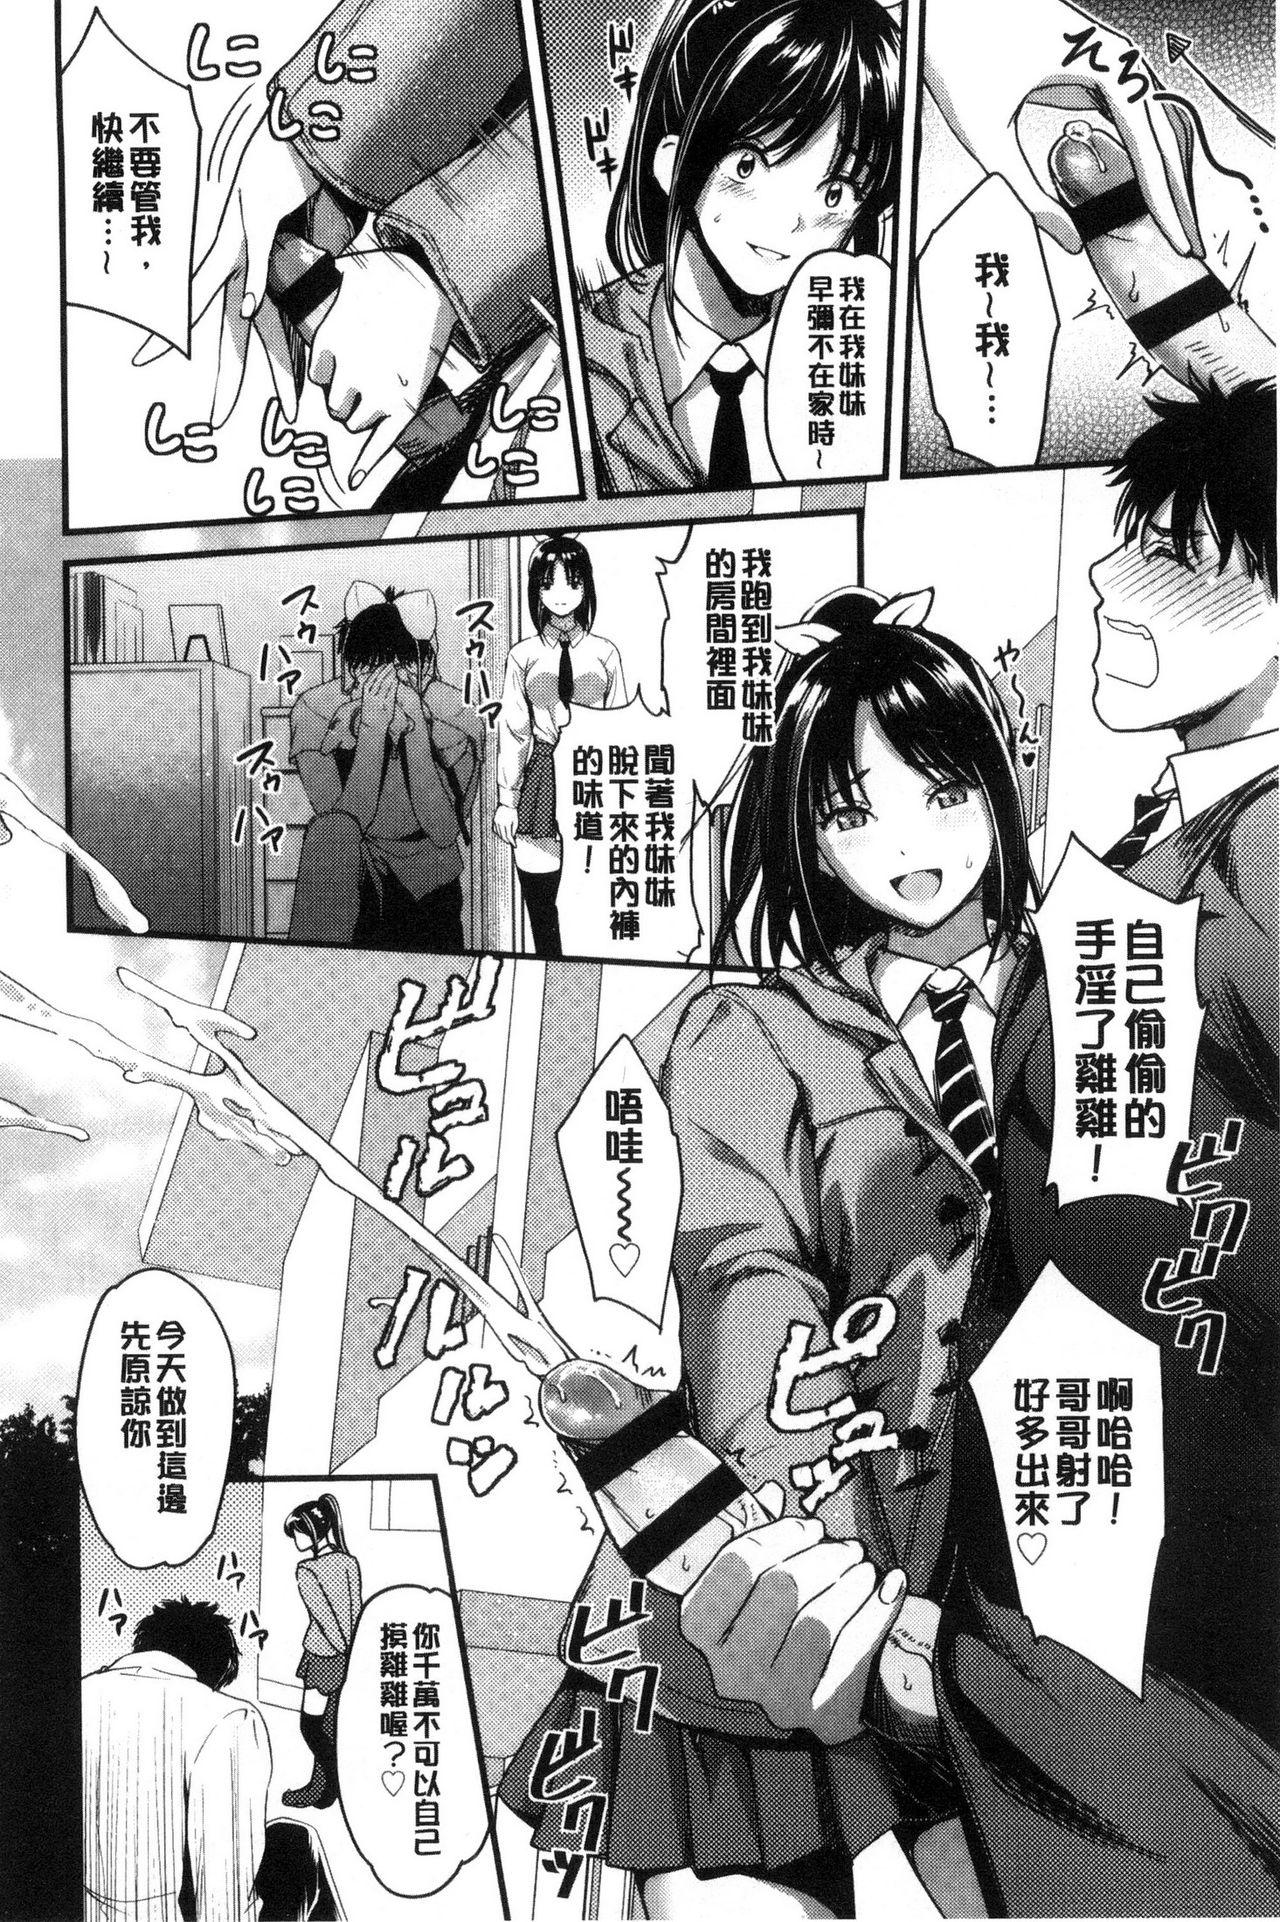 Seifuku no Mama Aishinasai! - Love in school uniform 23